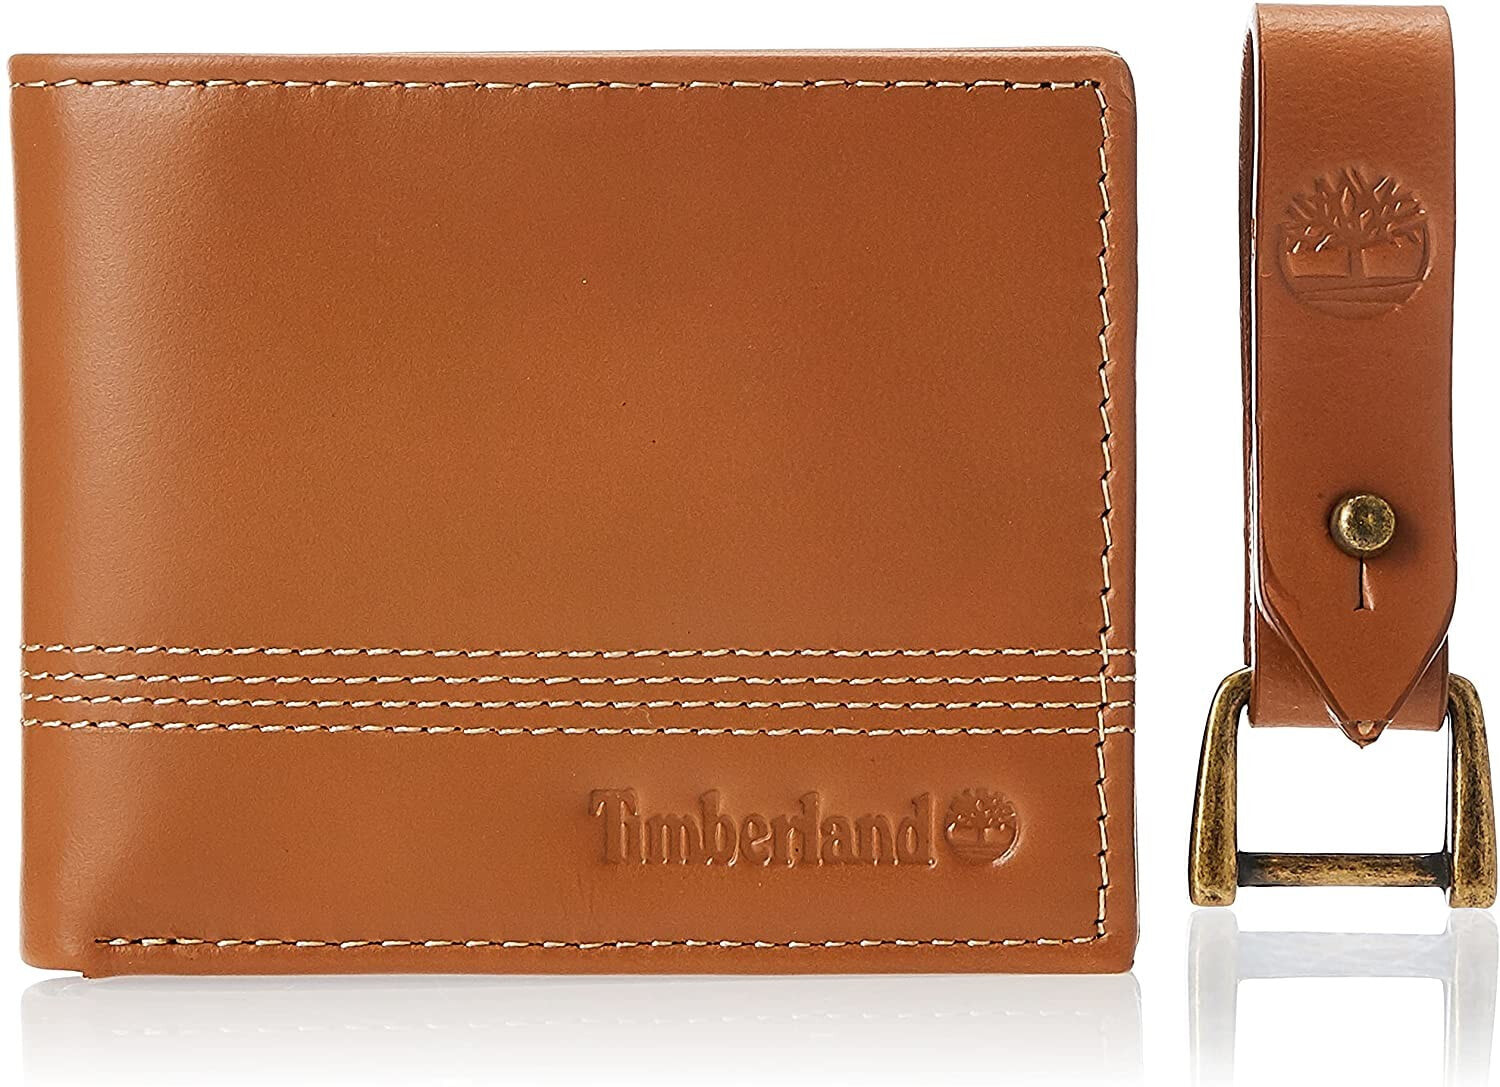 Мужской портмоне кожаный коричневый горизонтальный без застежки Timberland Men's Leather Slimfold Wallet with Matching Fob Gift Set, Tan, One Size